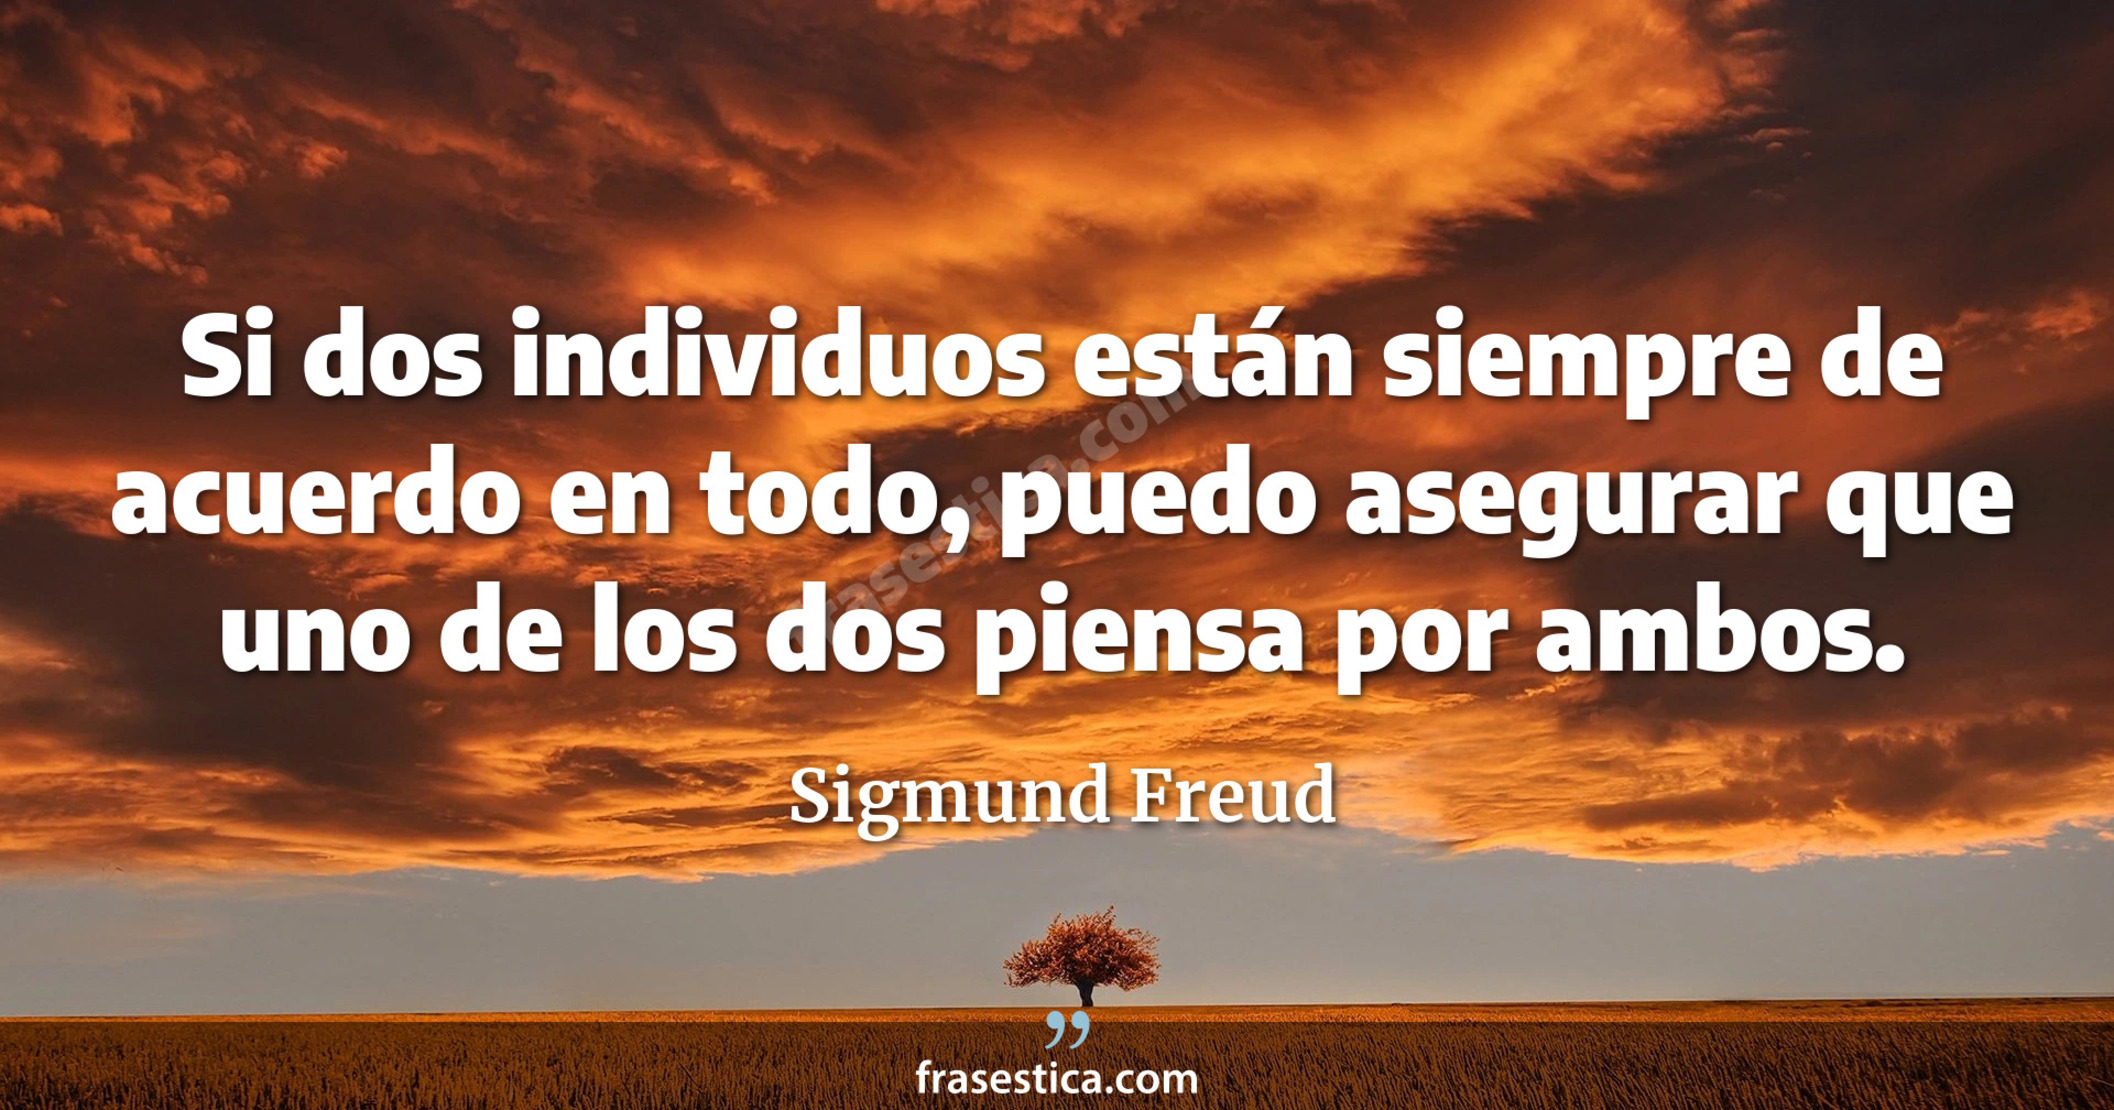 Si dos individuos están siempre de acuerdo en todo, puedo asegurar que uno de los dos piensa por ambos. - Sigmund Freud